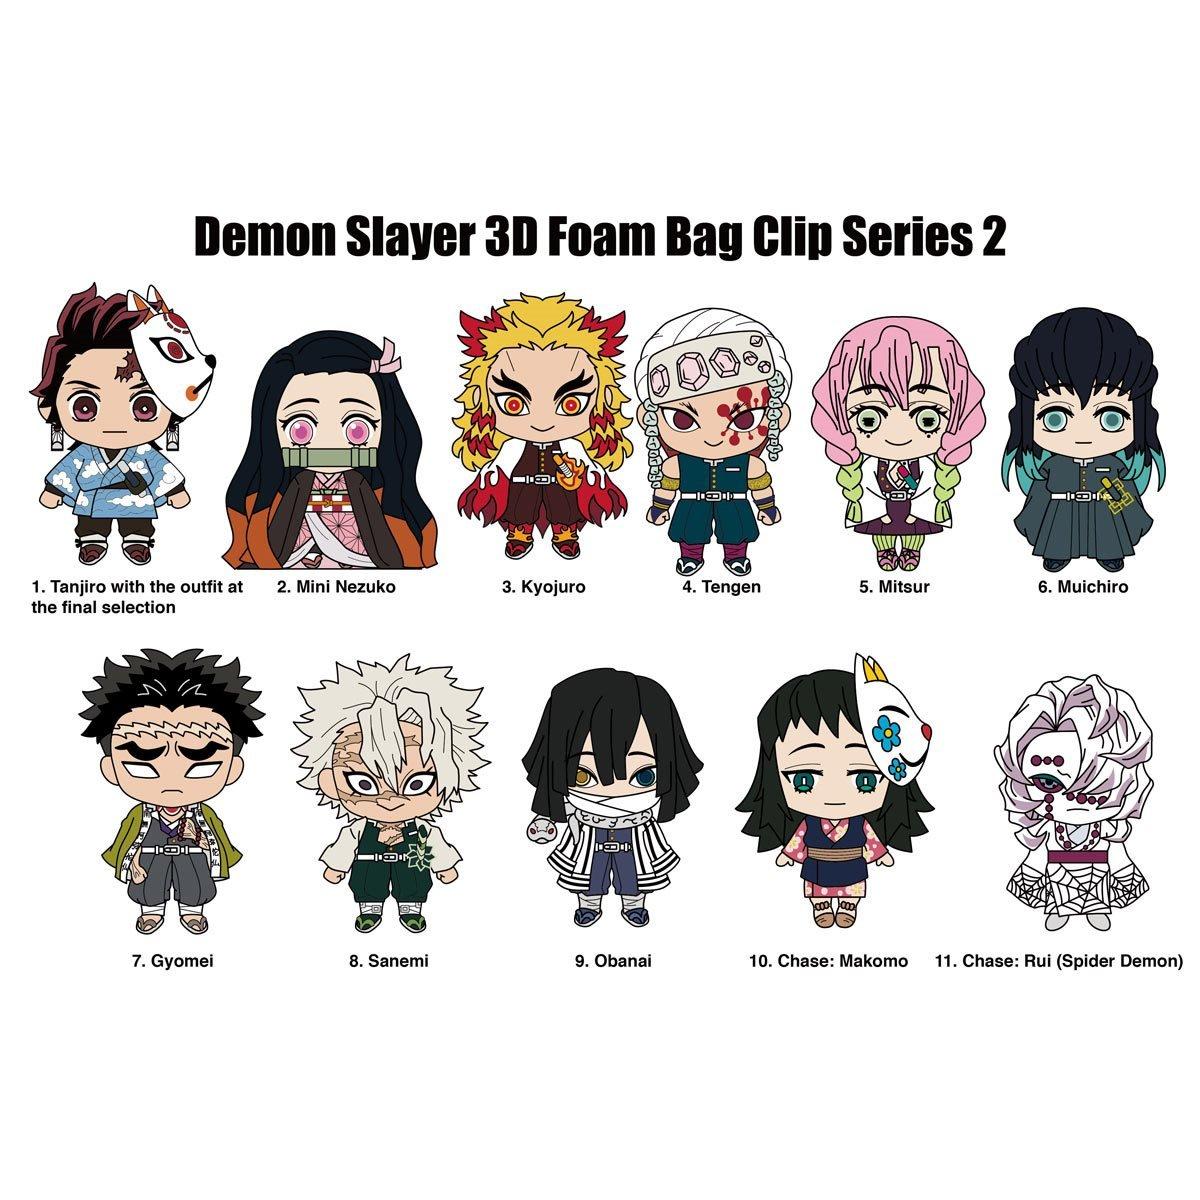 Nova temporada de Demon Slayer: Kimetsu no Yaiba disponível em SD